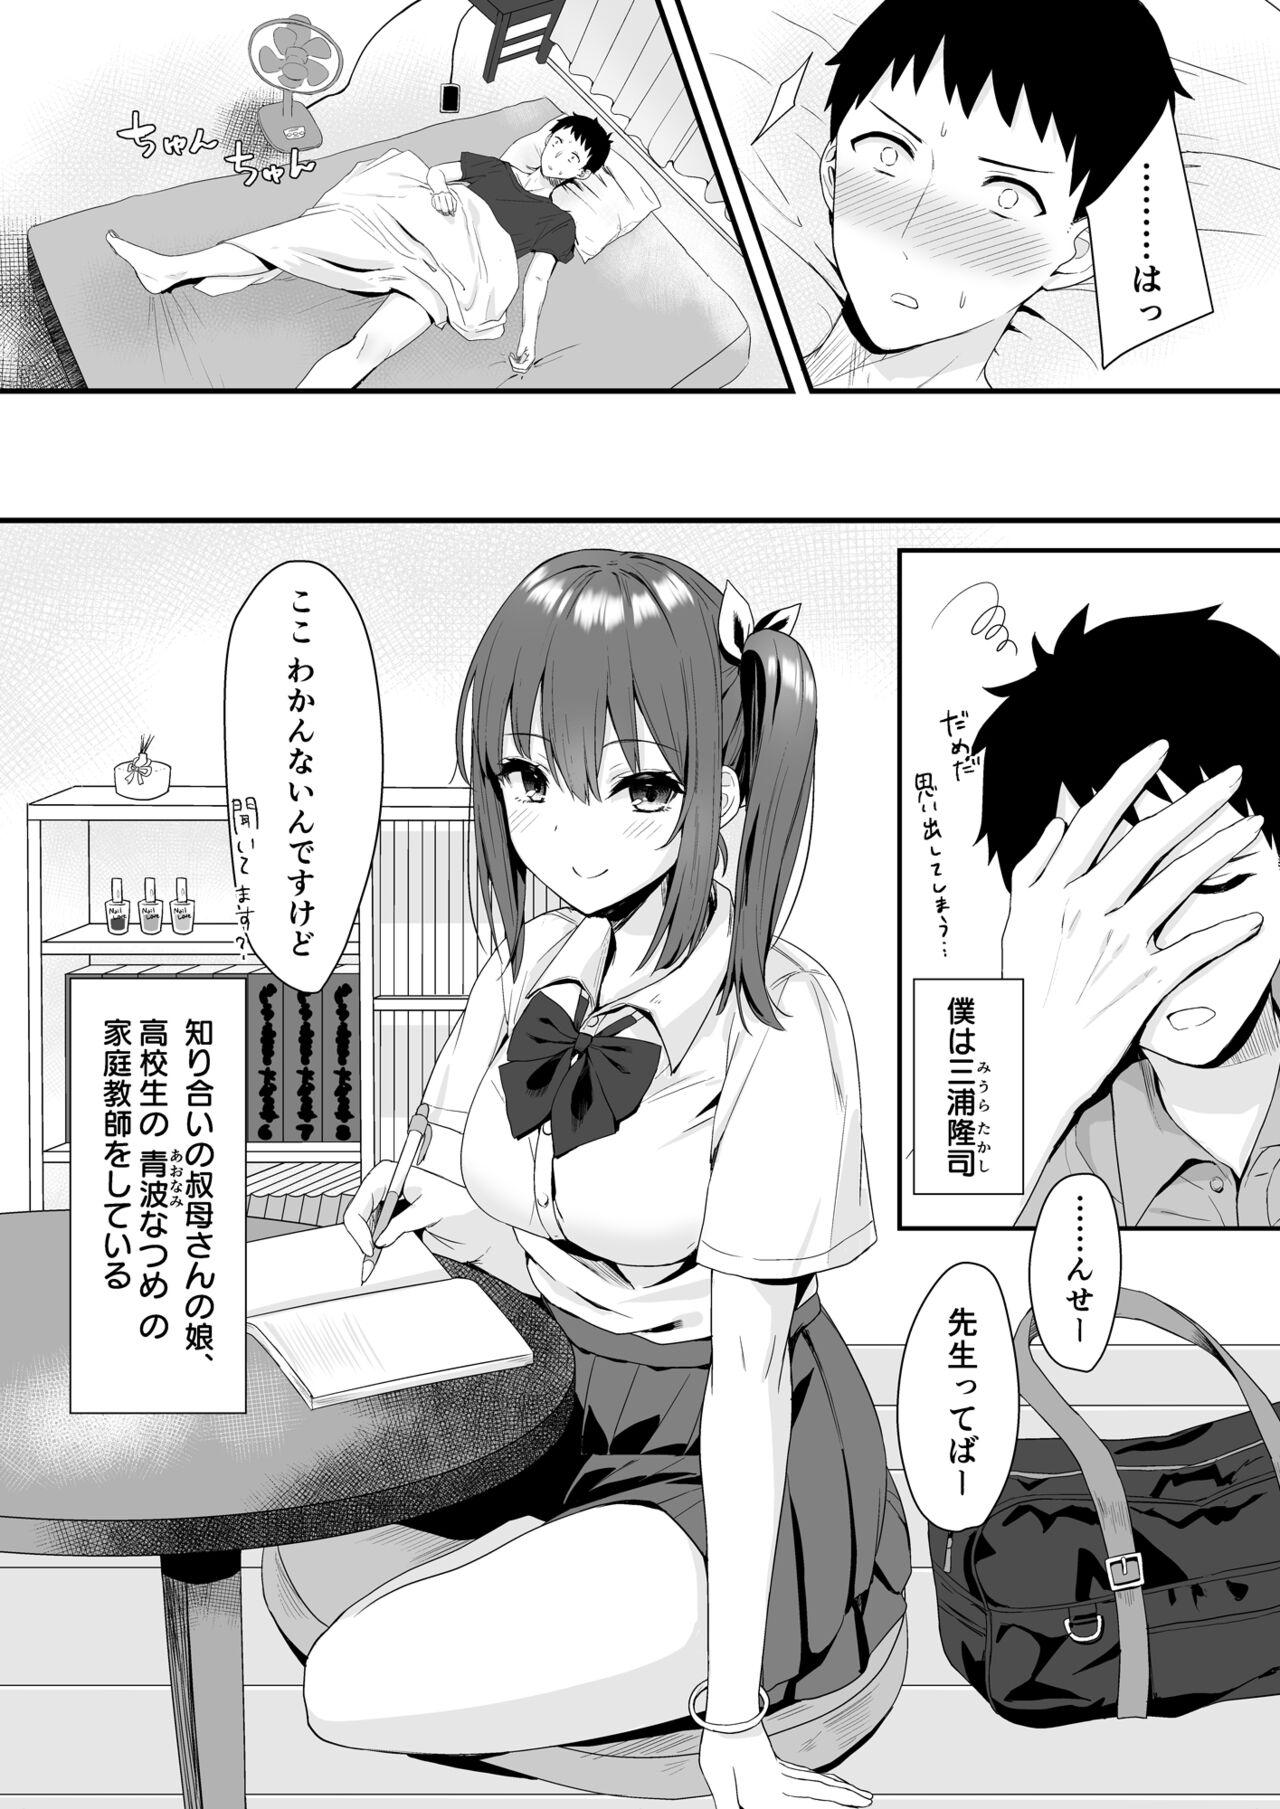 She OsananajimiJK to issen koechau natsu no yoru Seduction - Page 4